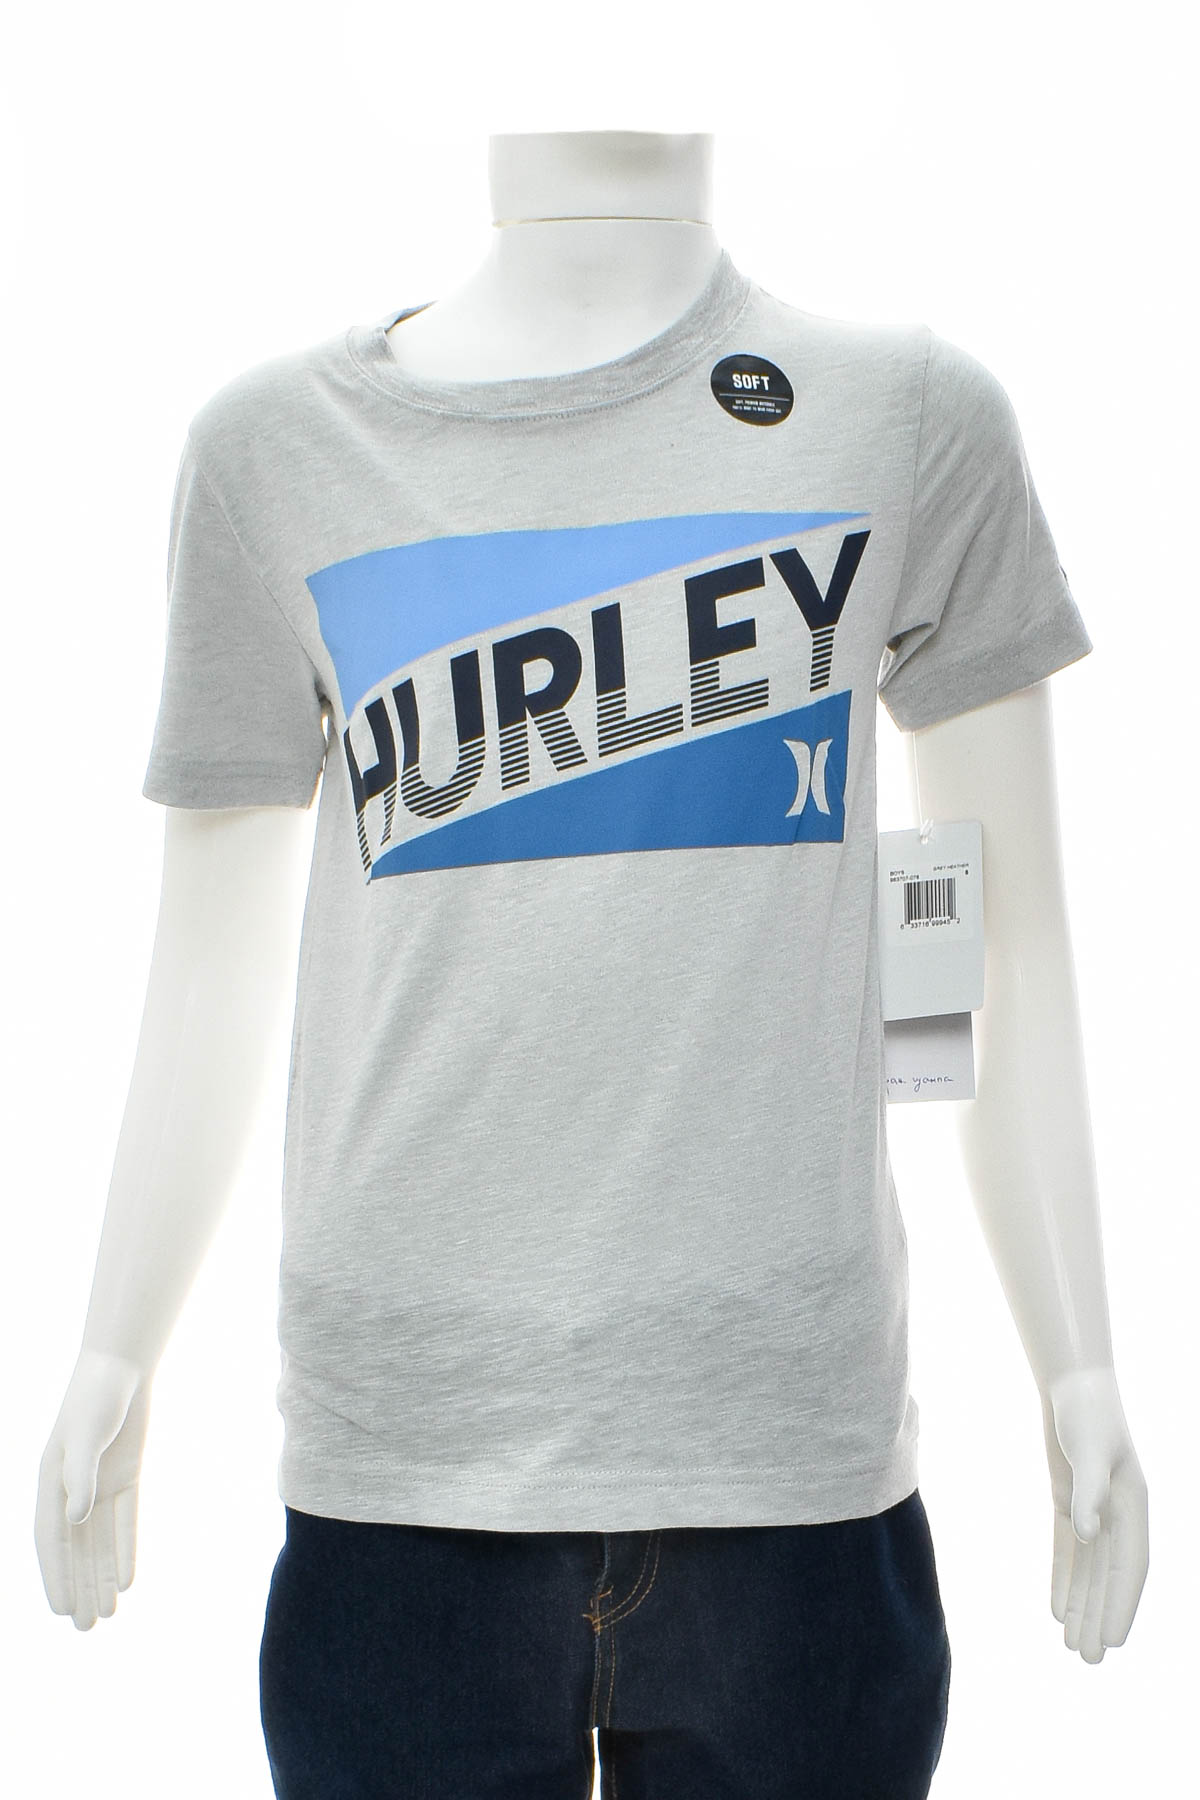 Tricou pentru băiat - Hurley - 0